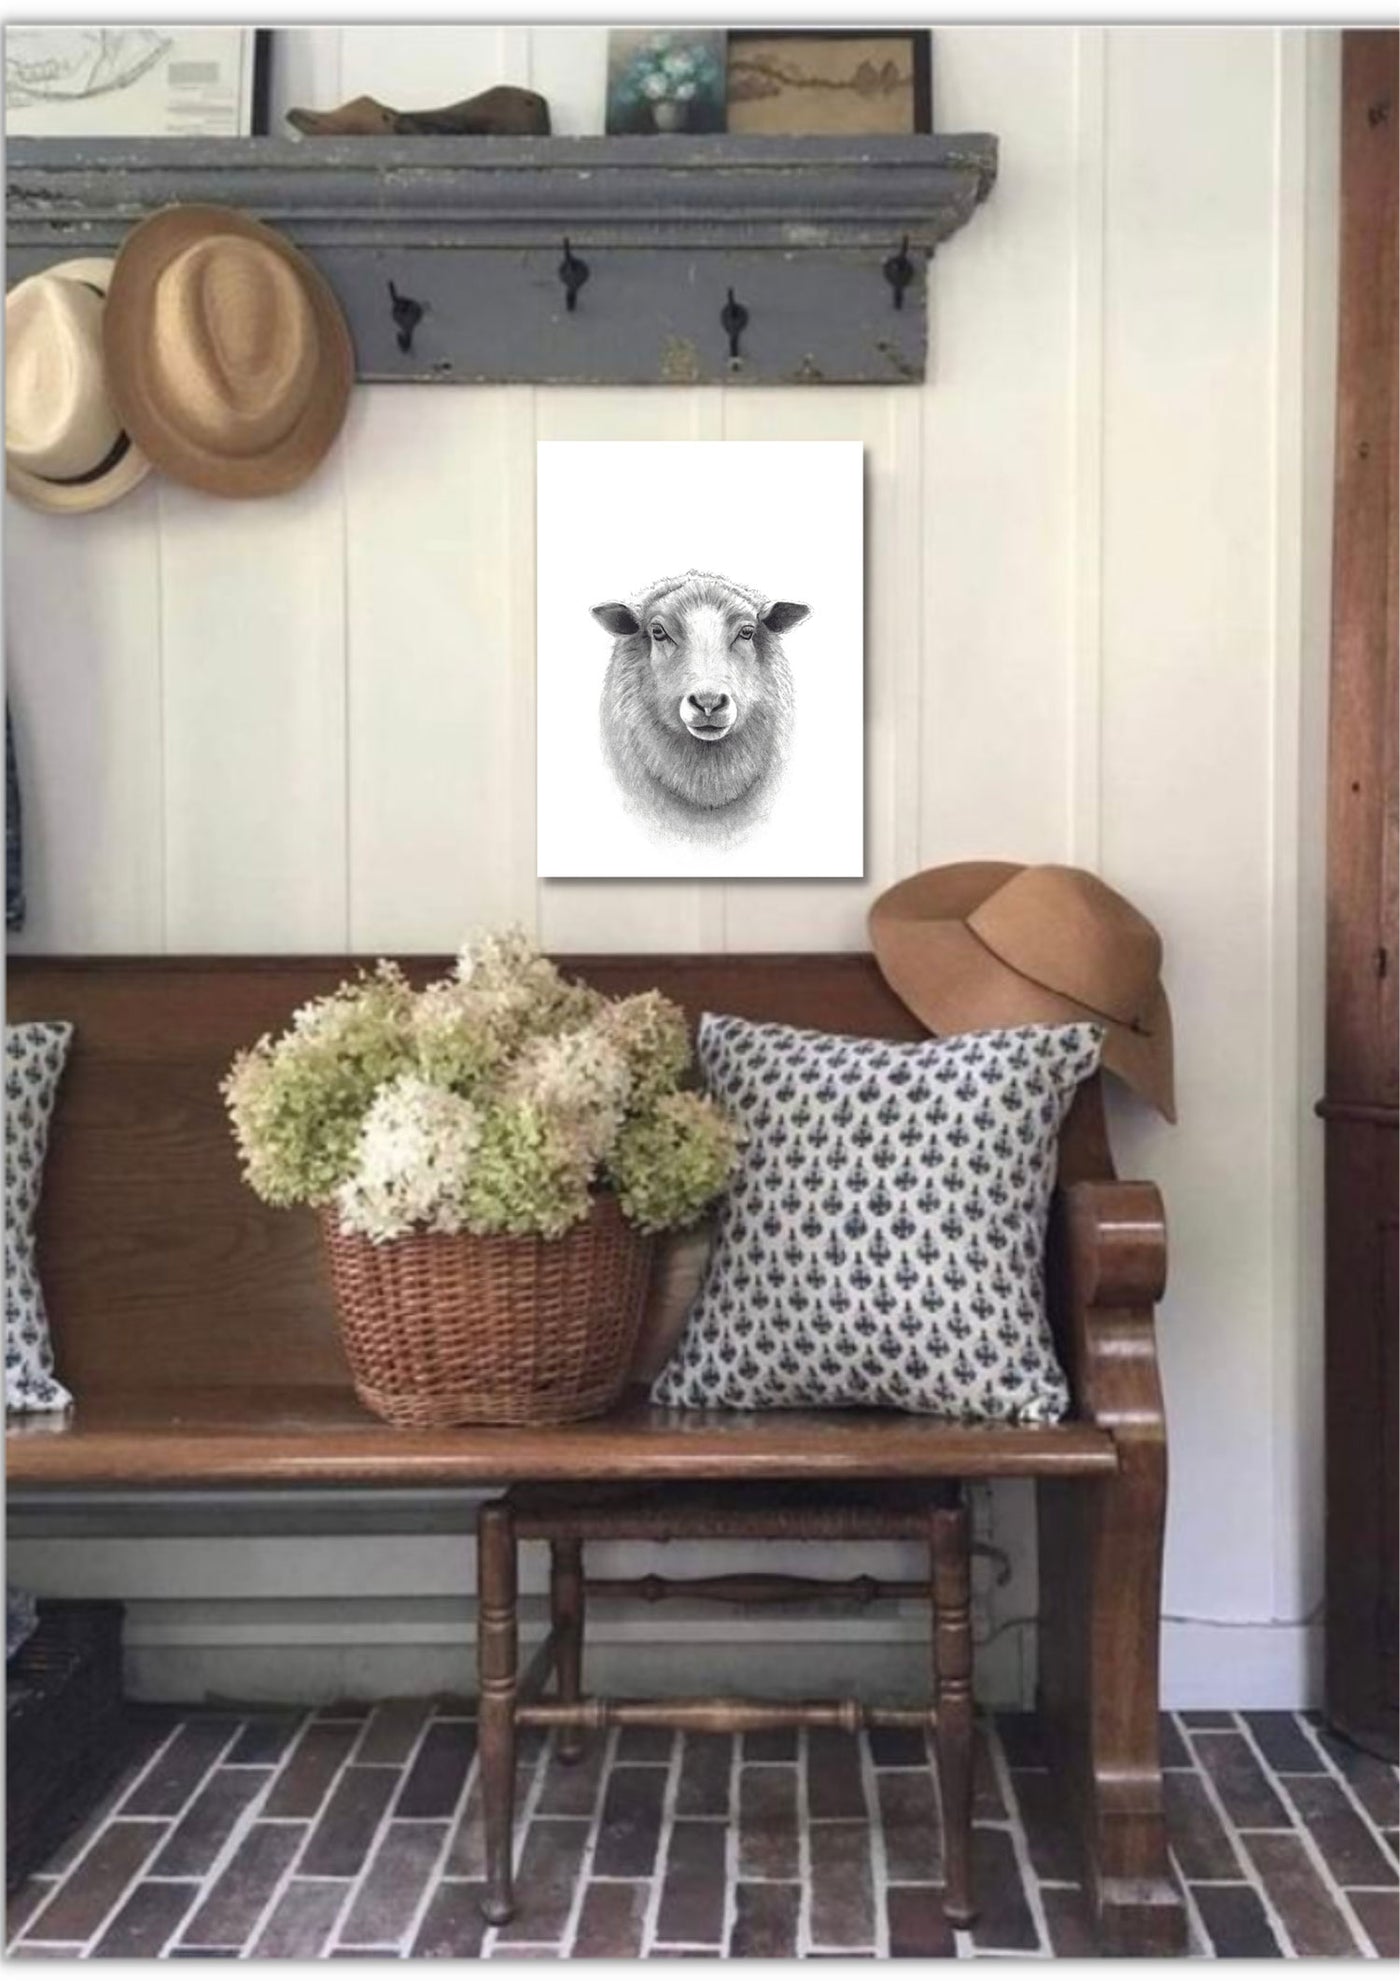 Sheep Canvas Art Print